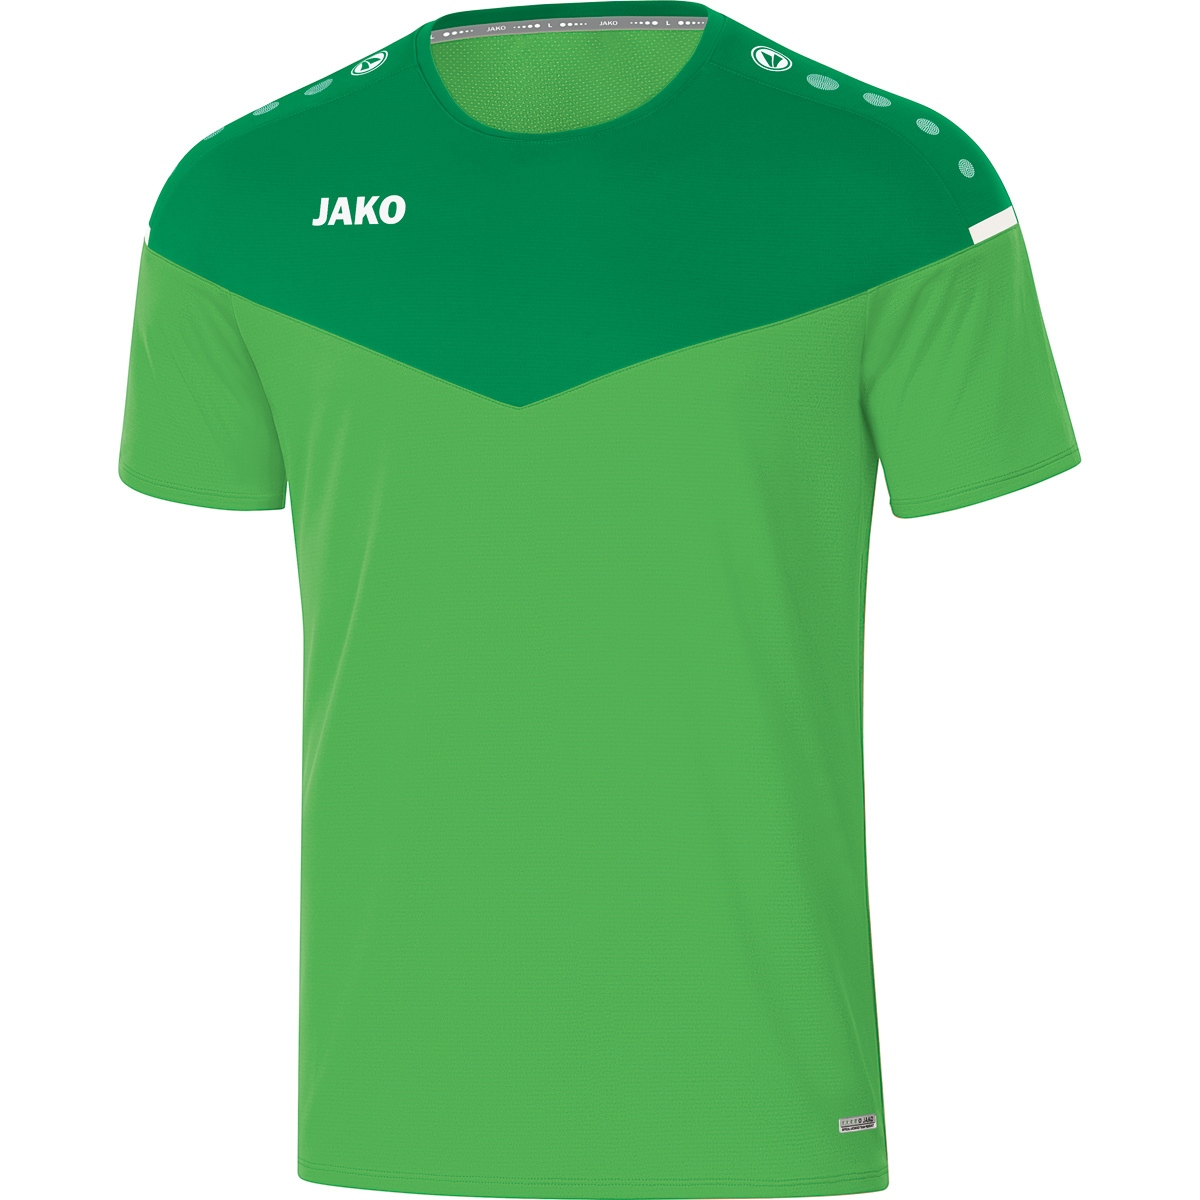 Gr. XXL, 2.0 Herren, soft 6120 T-Shirt green/sportgrün, Champ JAKO